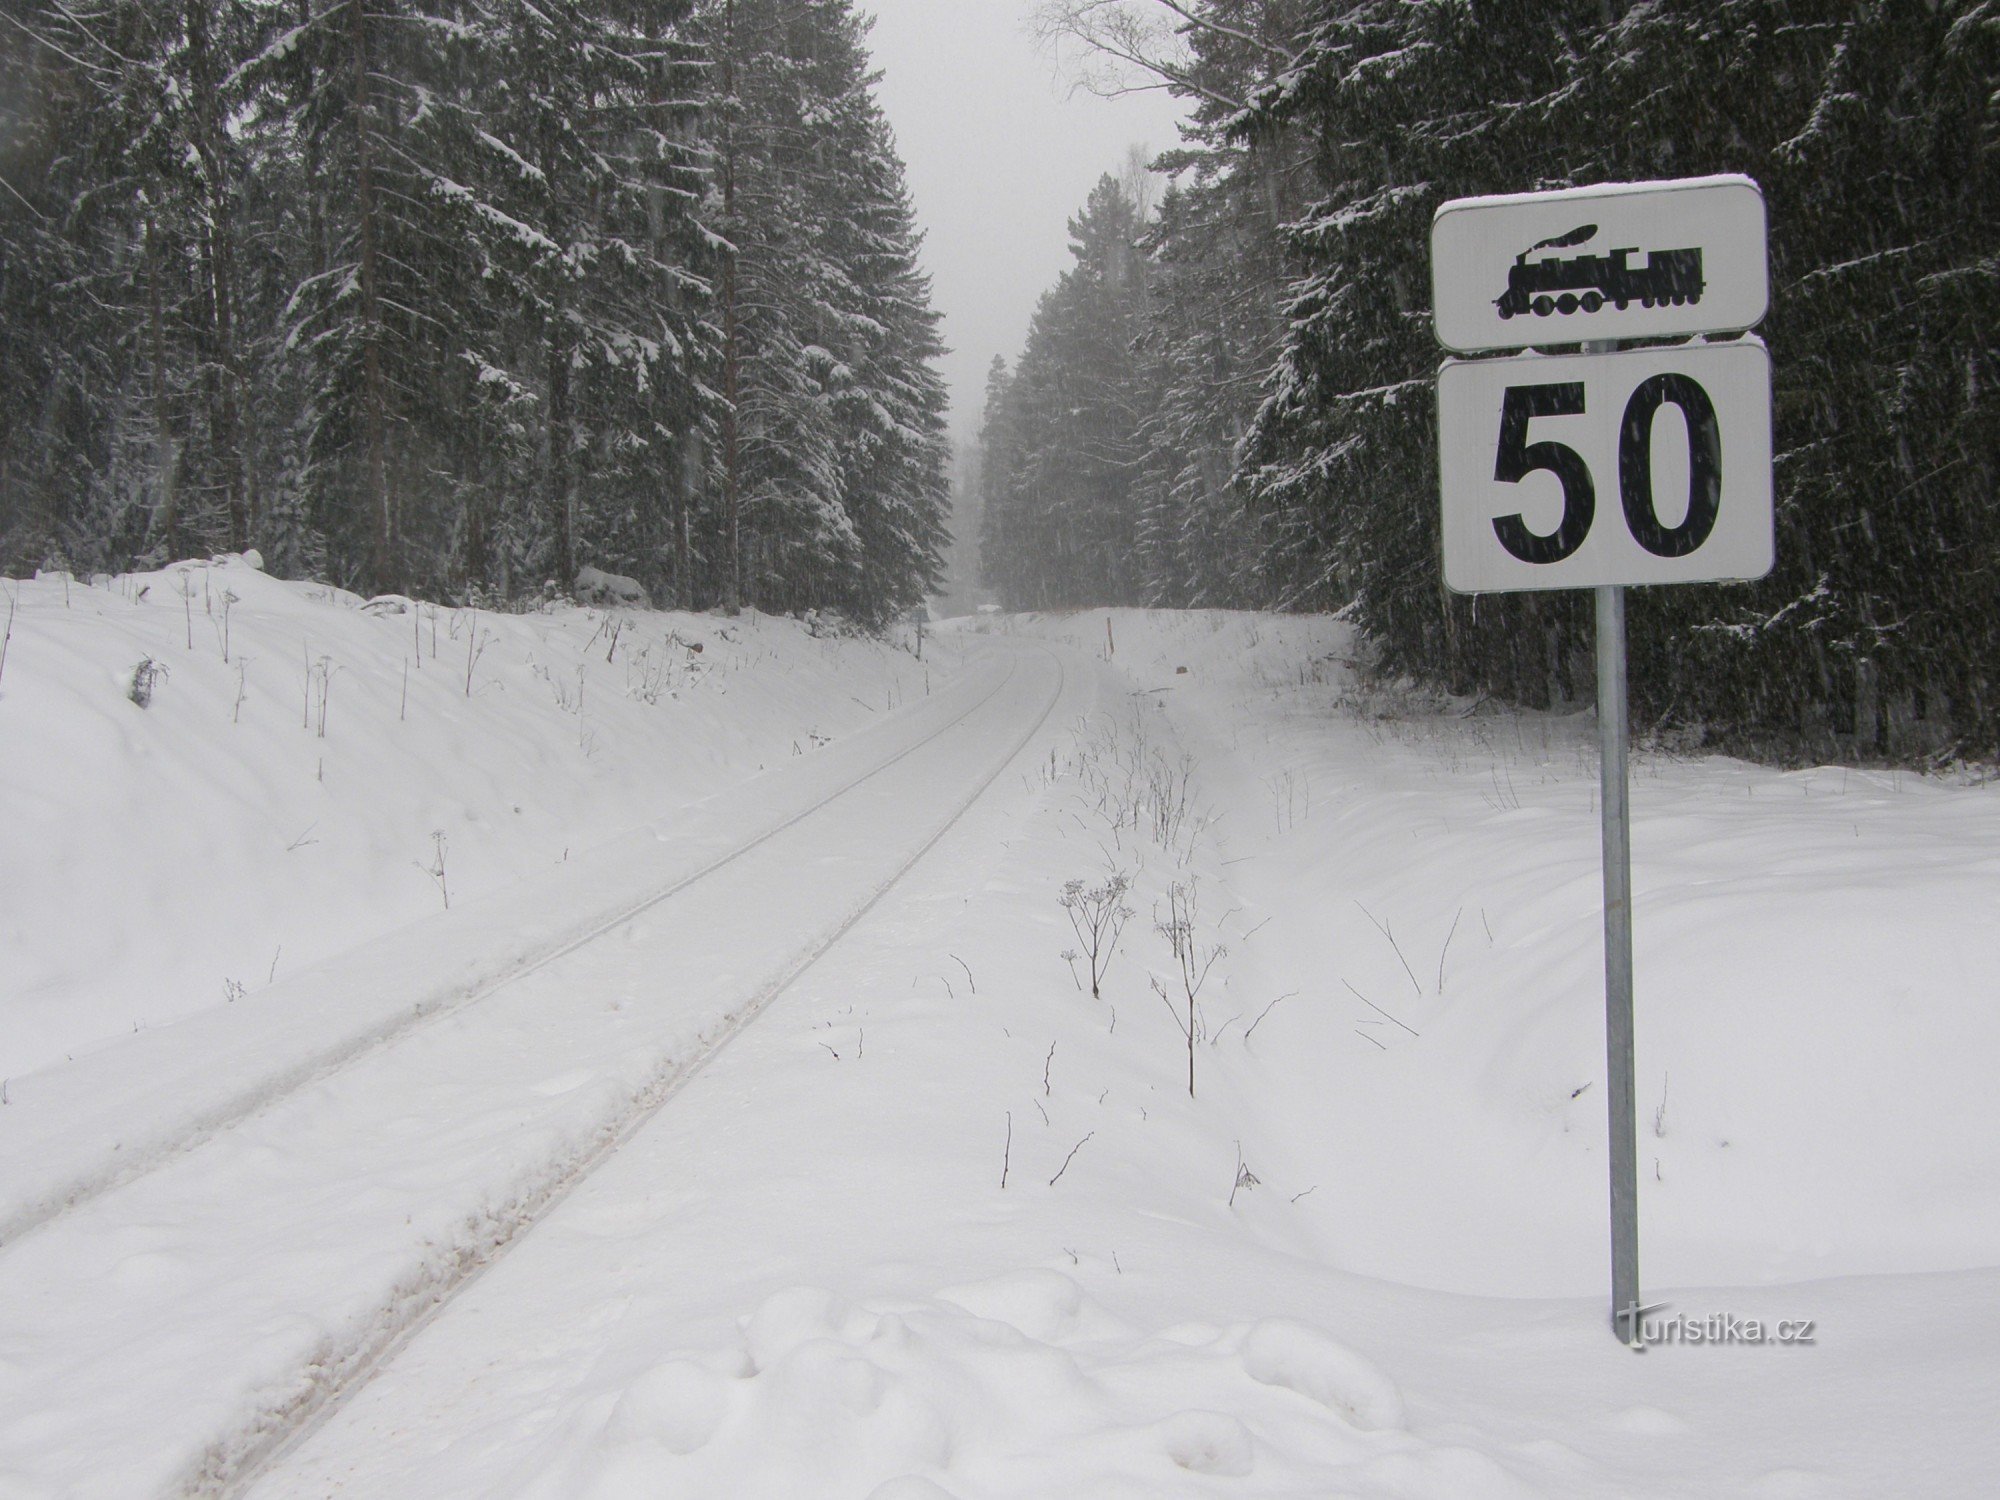 铁轨穿过雪地前往巴伐利亚边境